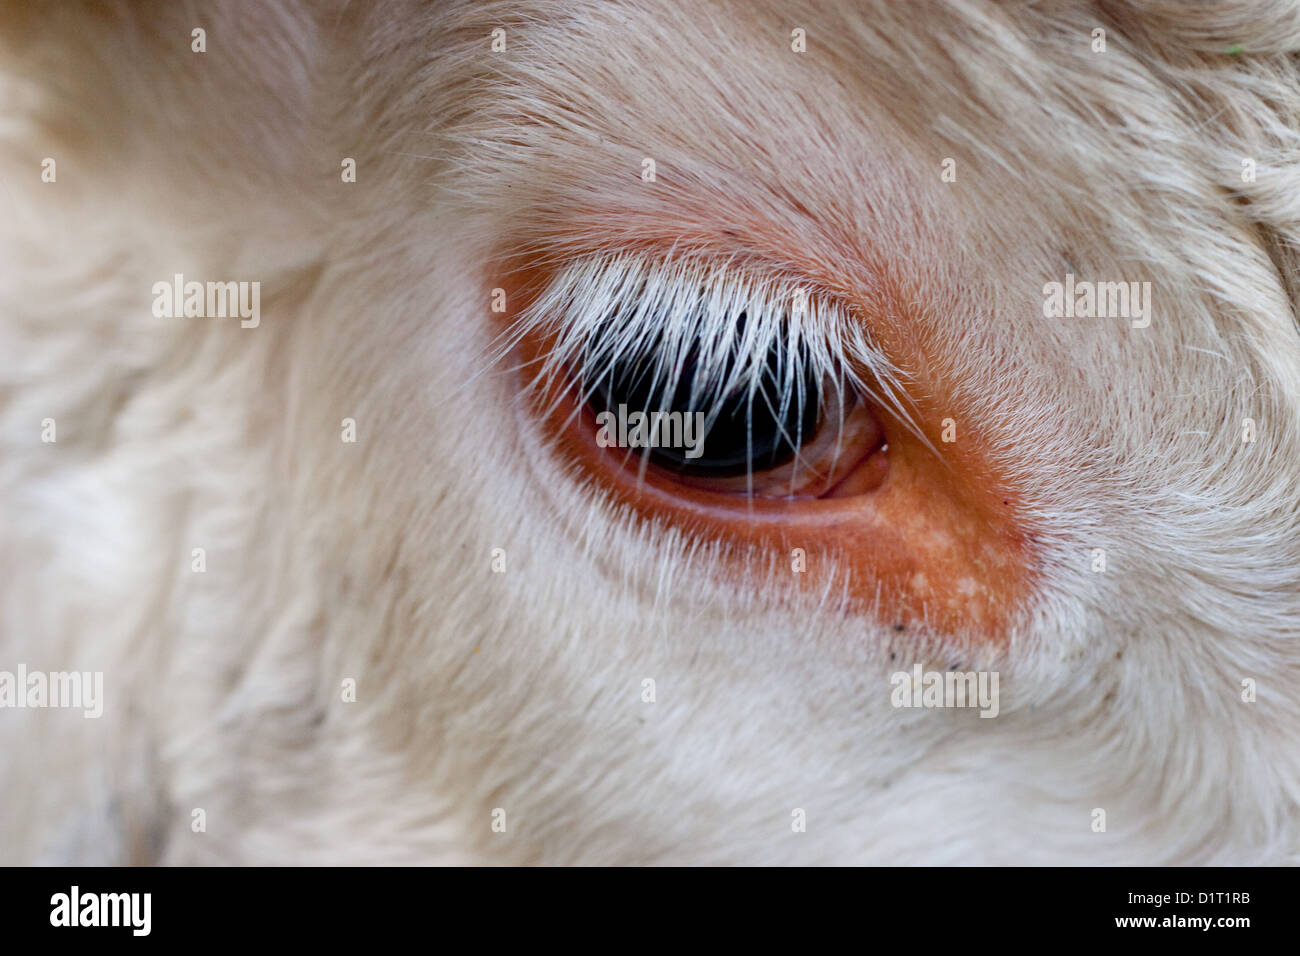 White eyelashes around the eye of a white cow close up Stock Photo